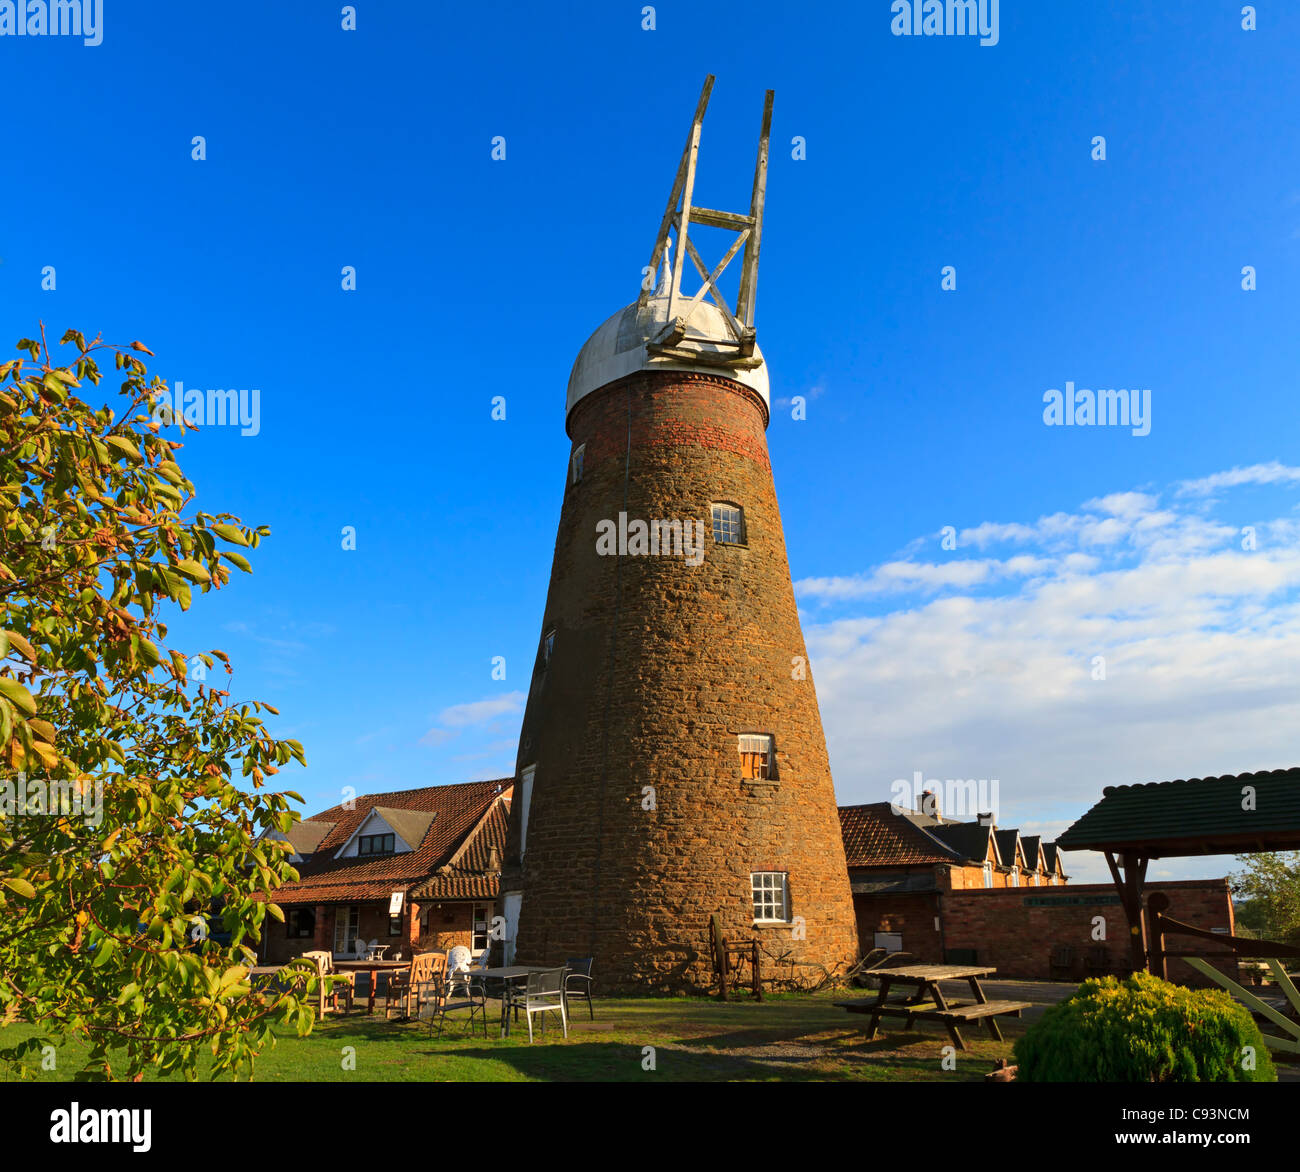 Wymondham Windmühle, Leicestershire. Fünfstöckige Turm Mühle im Jahre 1814 erbaut. Nicht mehr Betrieb im Jahr 1960. Teilweise restauriert. Stockfoto